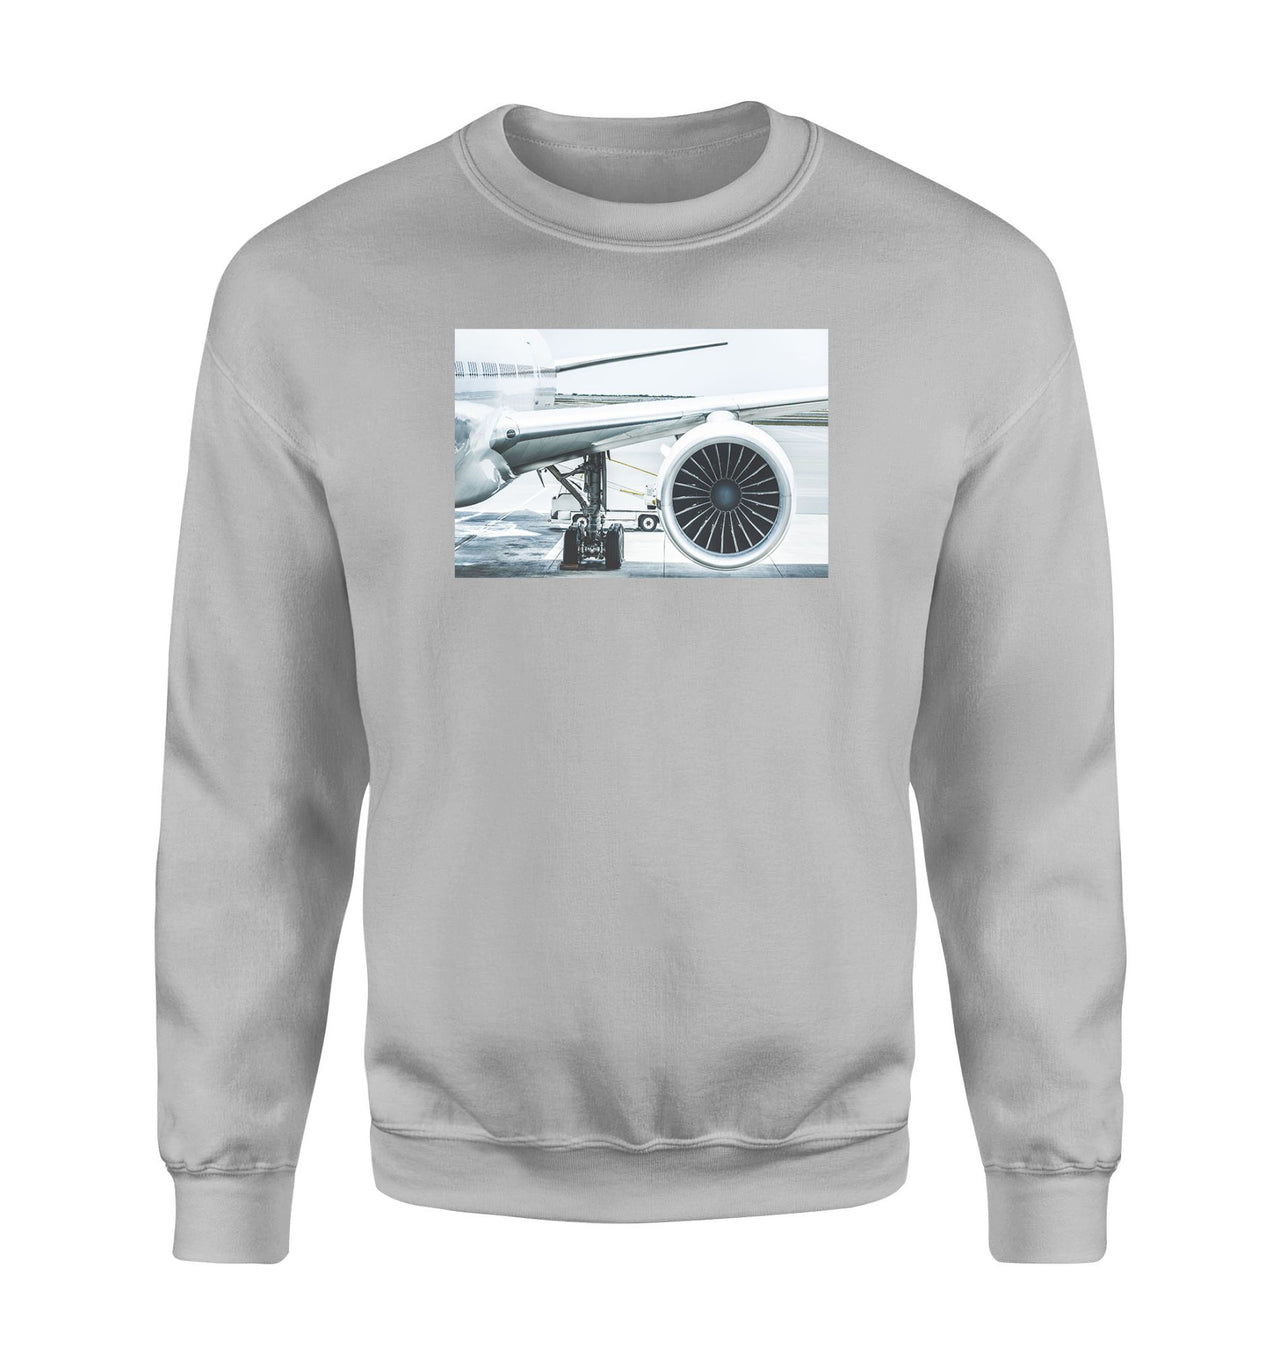 Amazing Aircraft & Engine Designed Sweatshirts